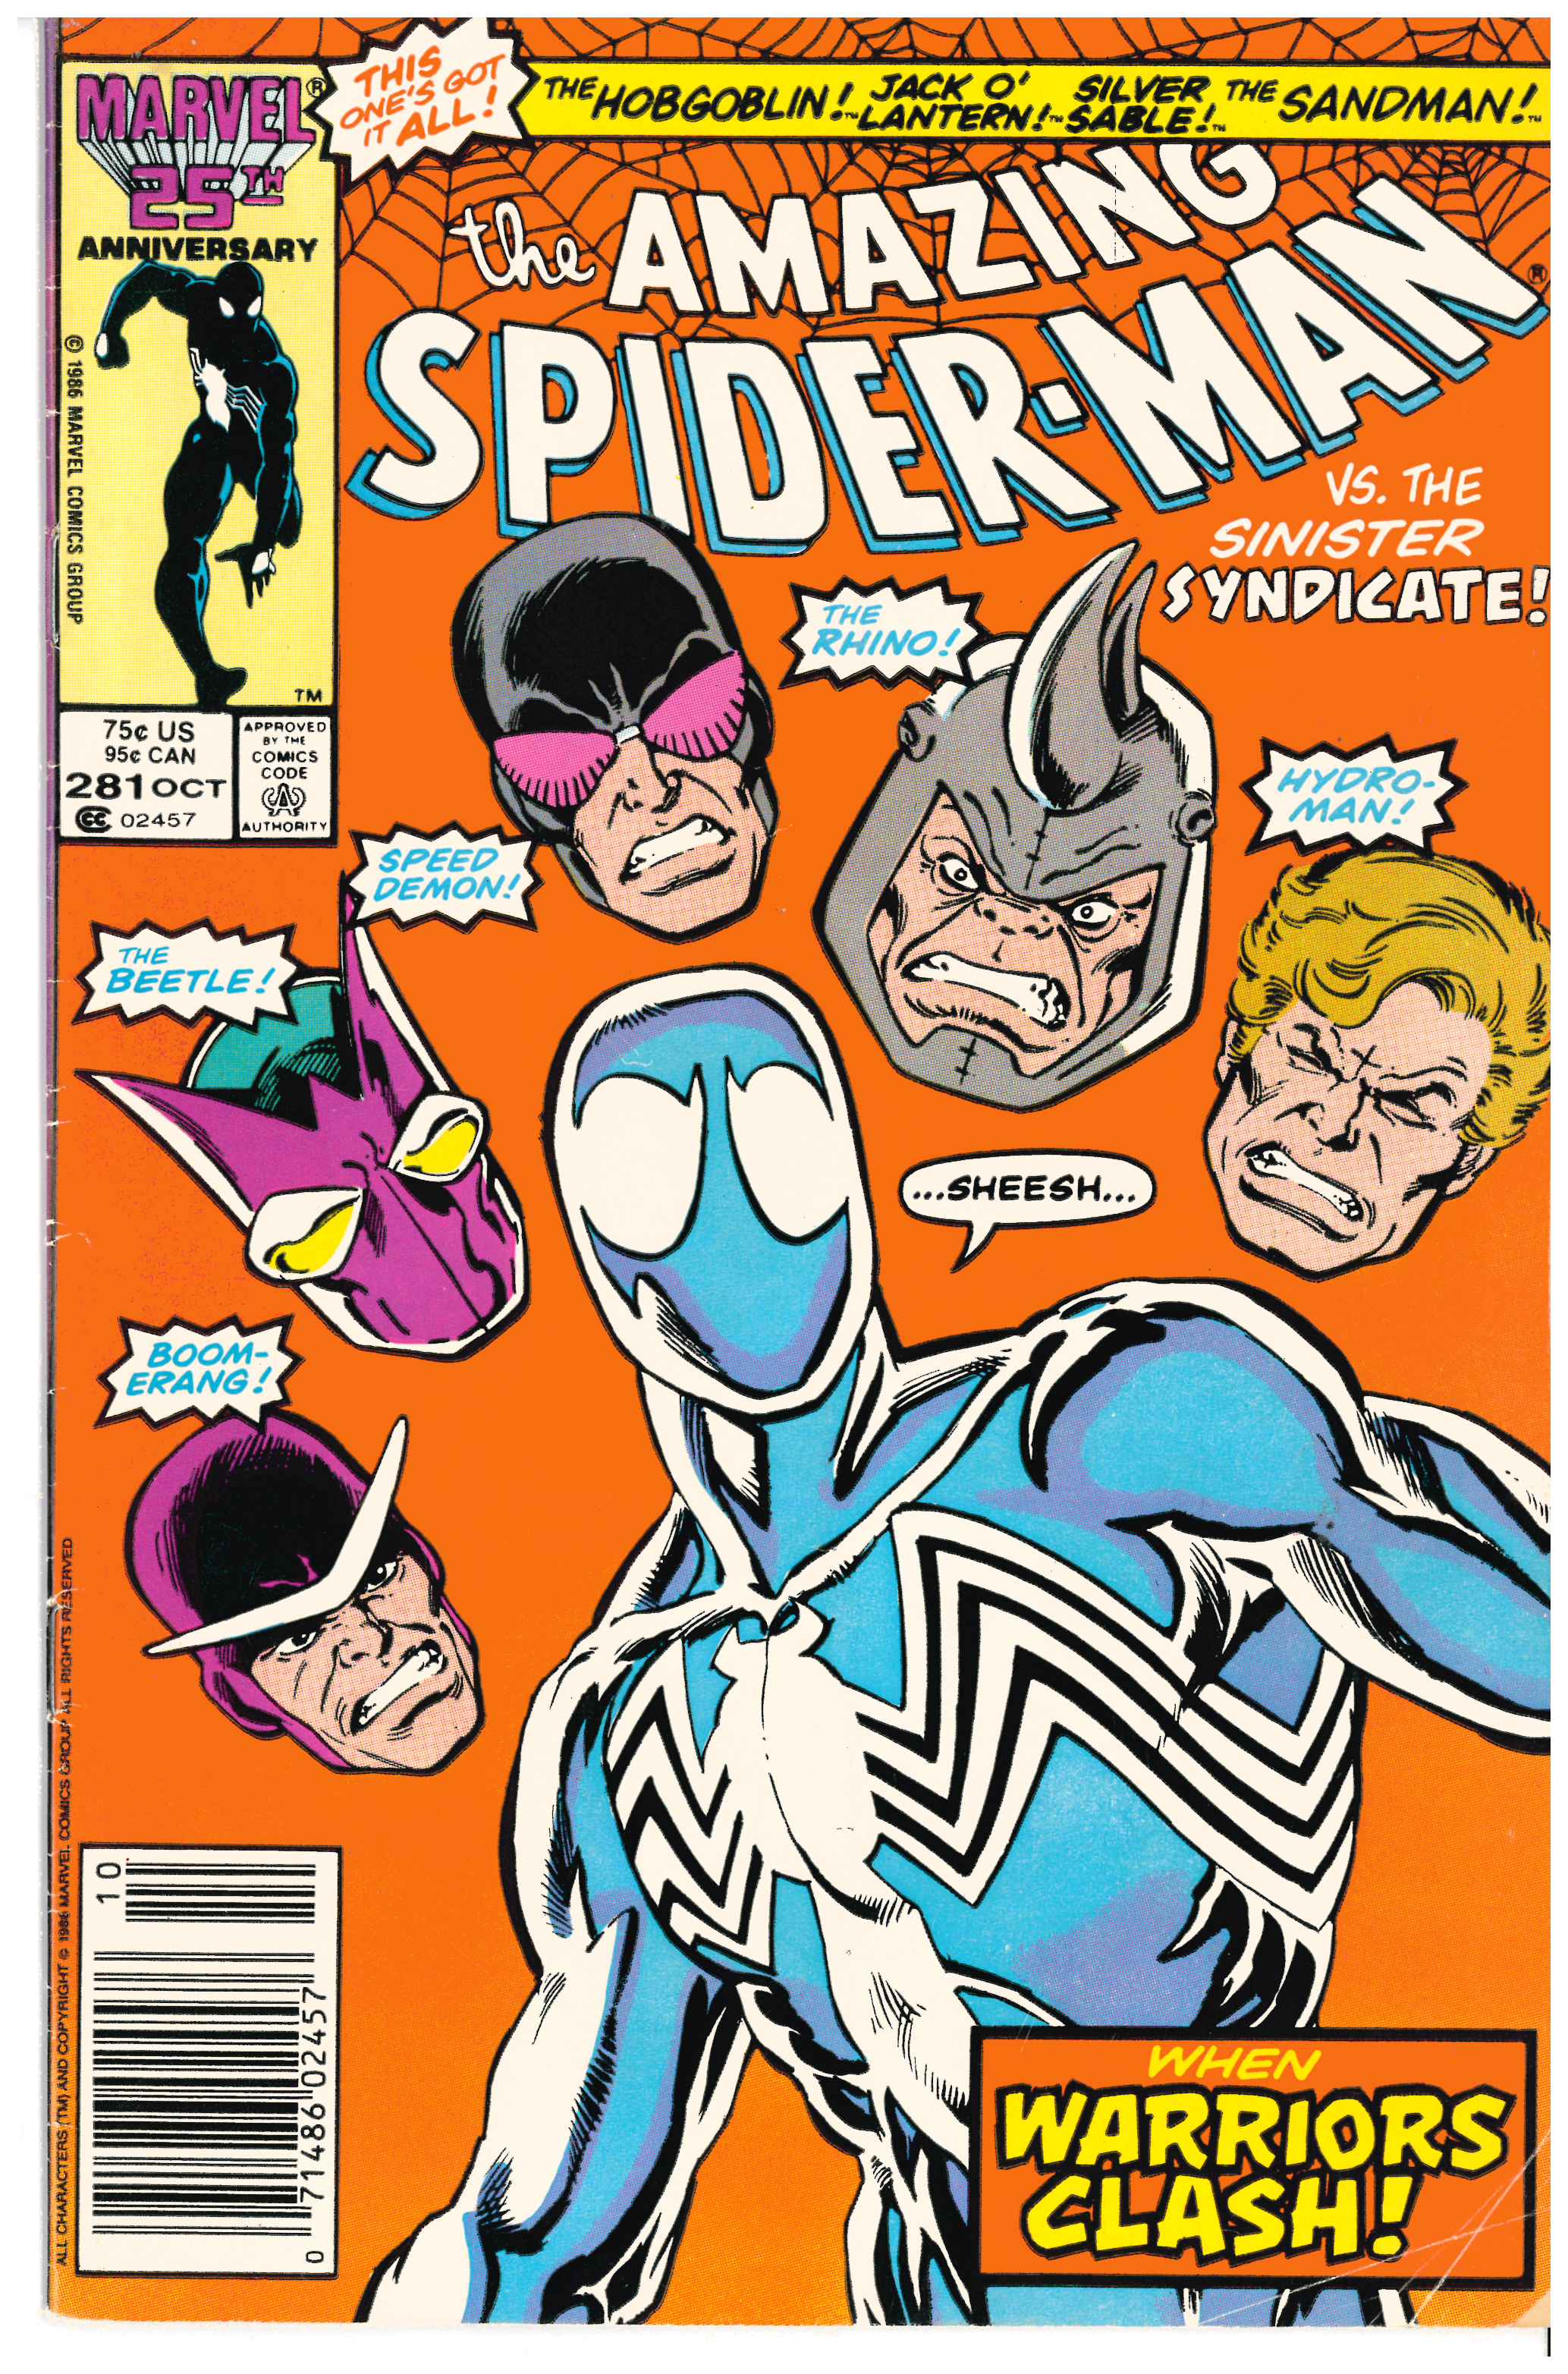 Amazing Spider-Man #281